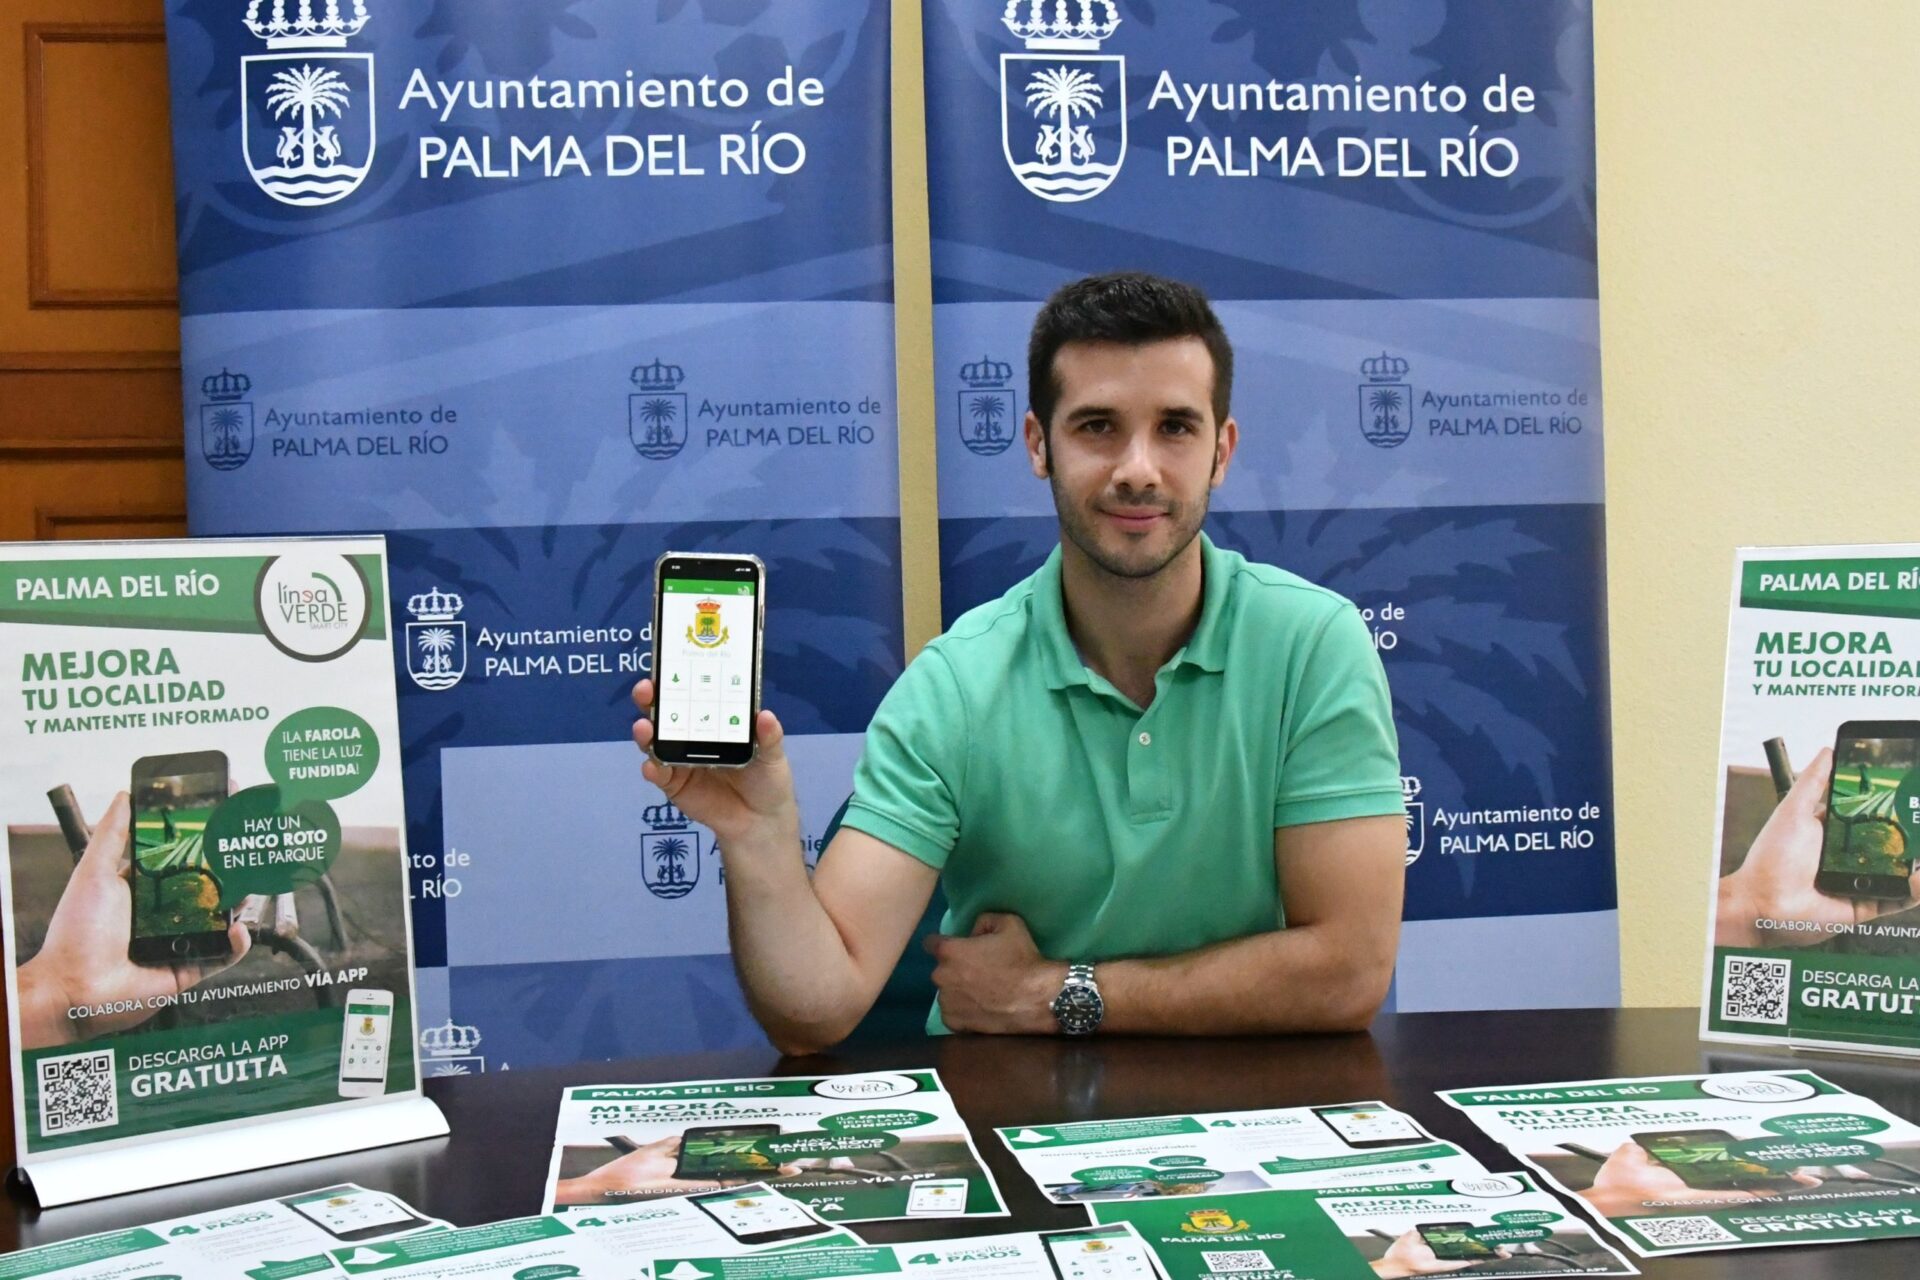 El Ayuntamiento Palma del Río implanta un nuevo servicio de comunicación de incidencias a través de una aplicación móvil 1